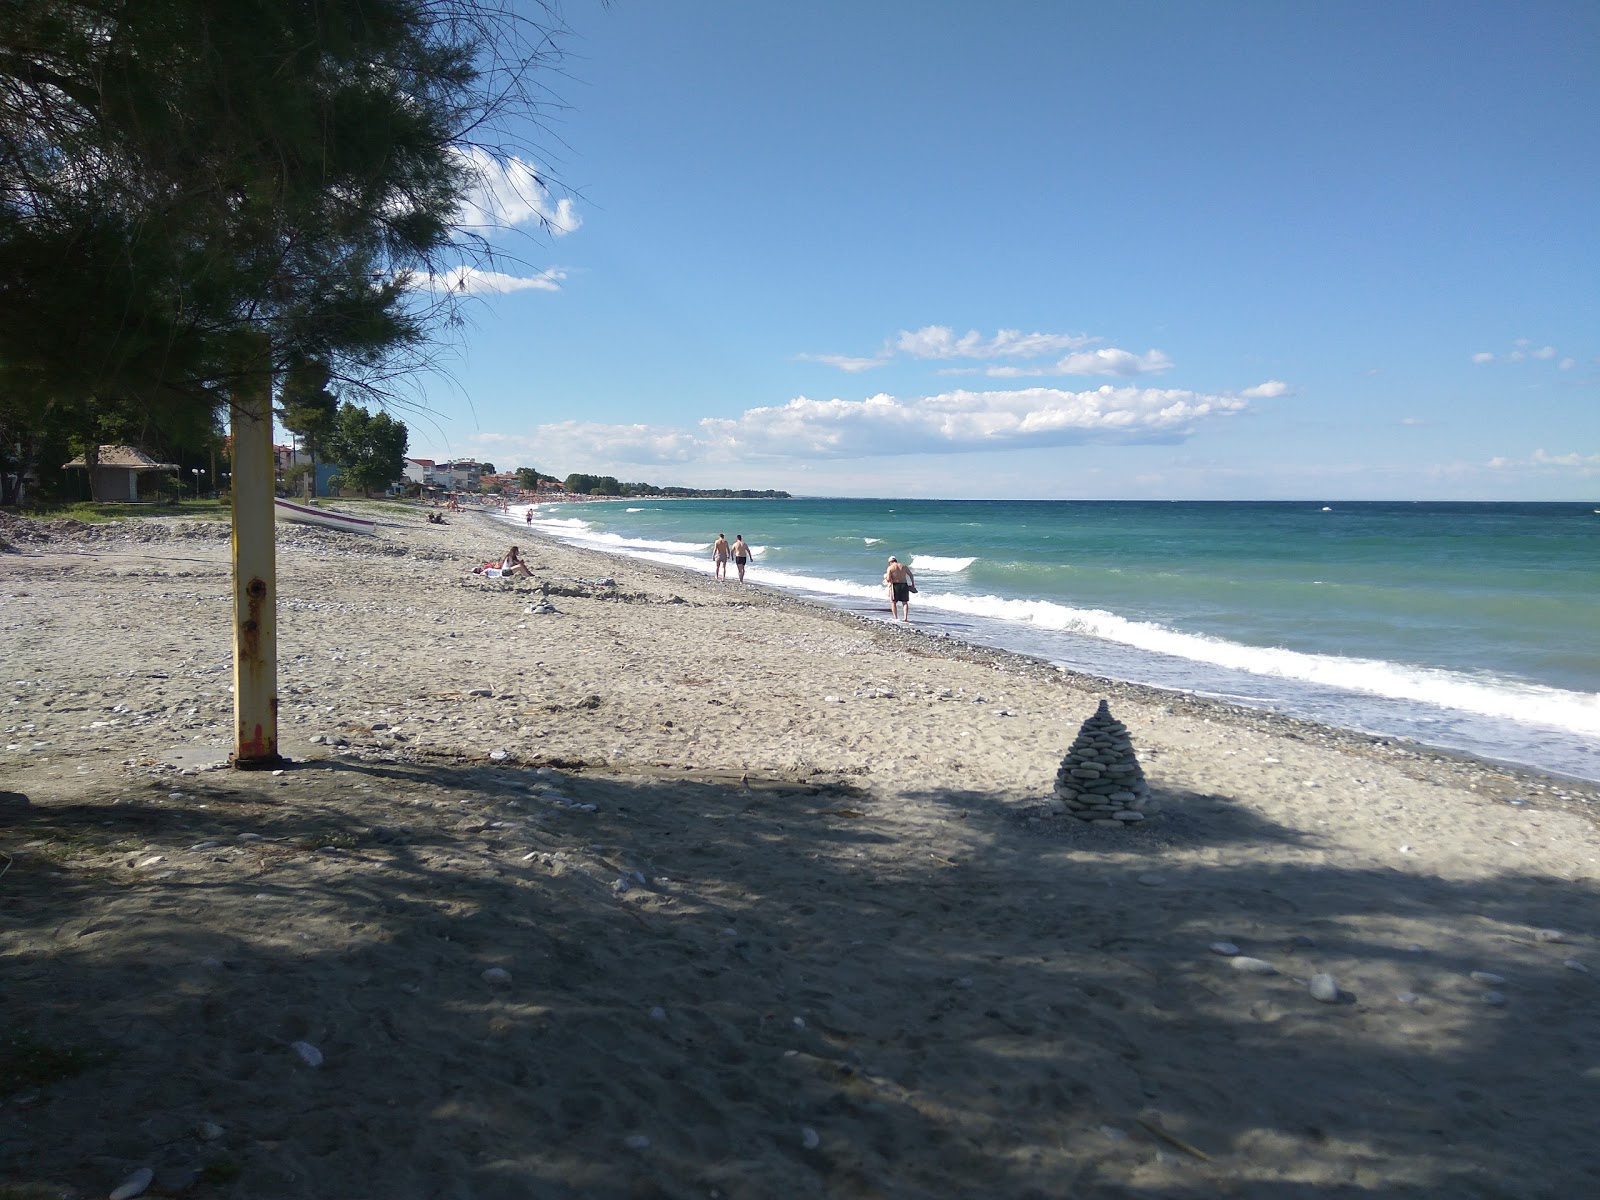 Fotografie cu Leptokaria beach III cu plajă spațioasă